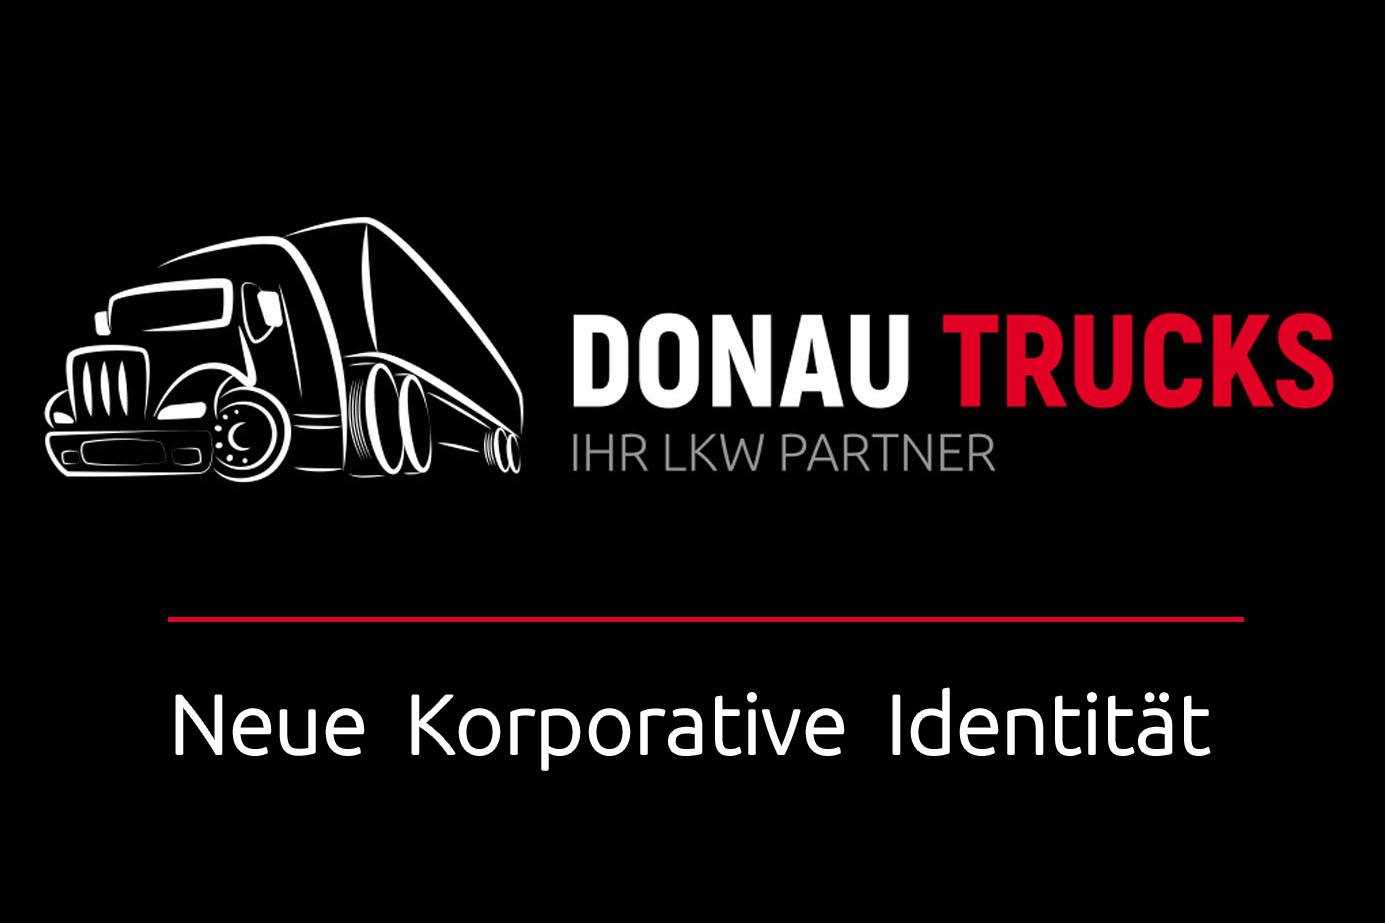 DONAU TRUCK – Ihr LKW-Partner hat eine neue korporative Identität und eine multifunktionale Website - 1